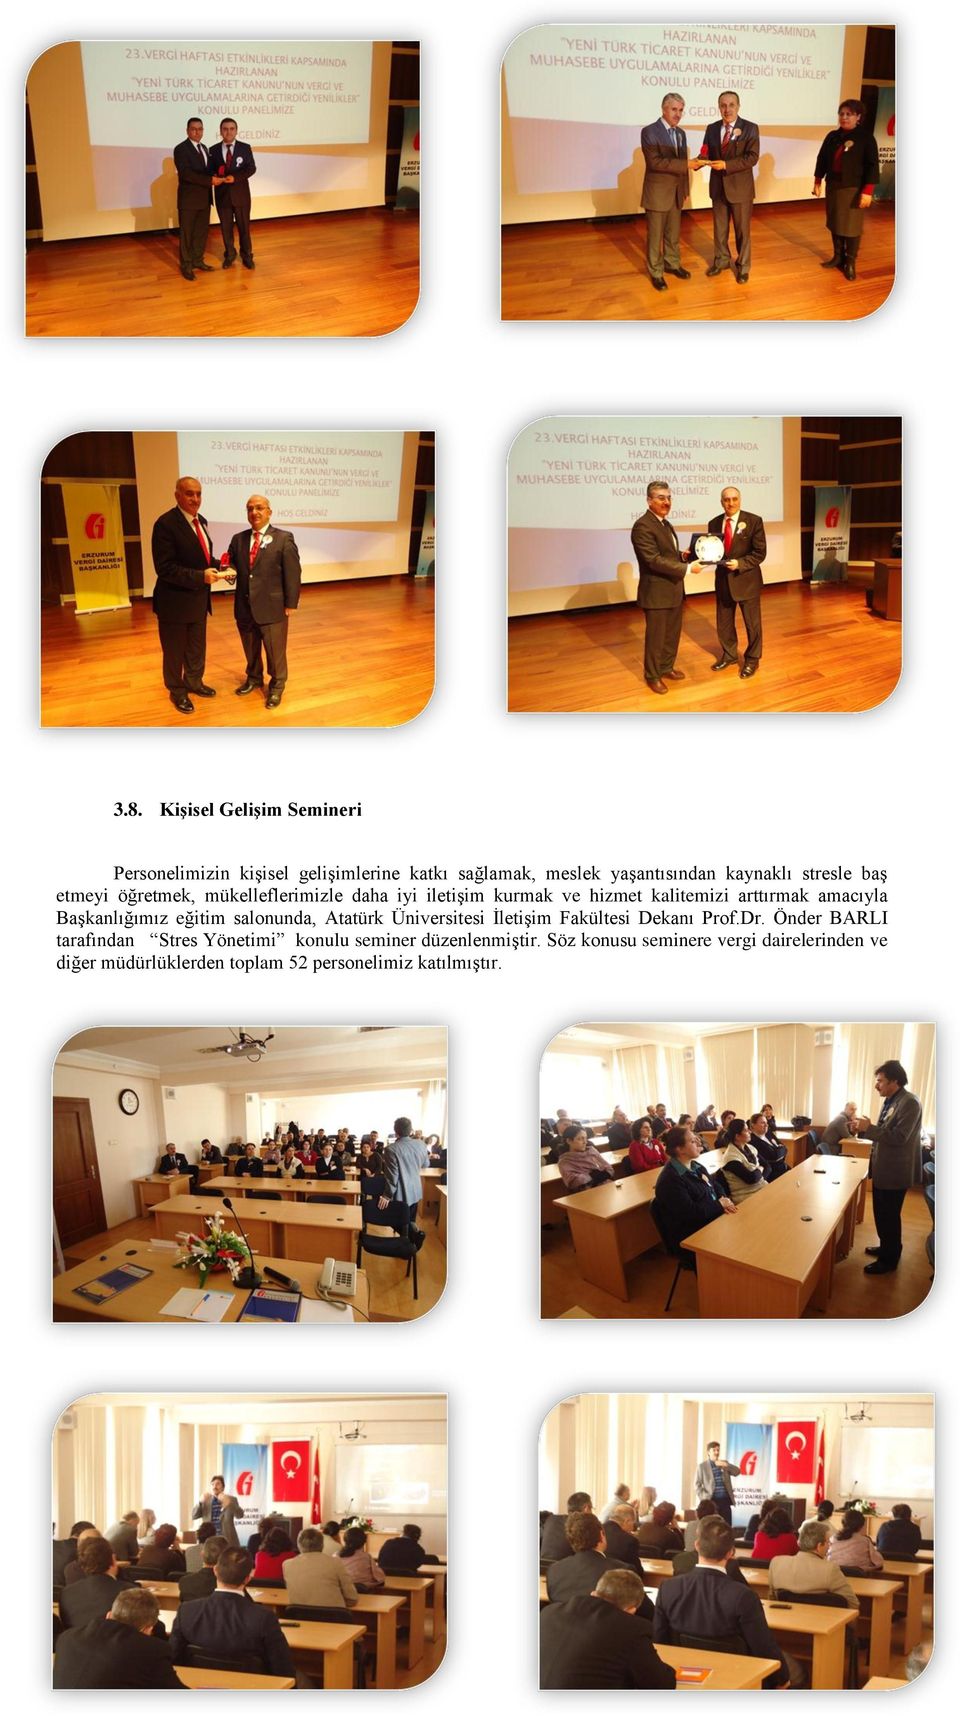 eğitim salonunda, Atatürk Üniversitesi İletişim Fakültesi Dekanı Prof.Dr.